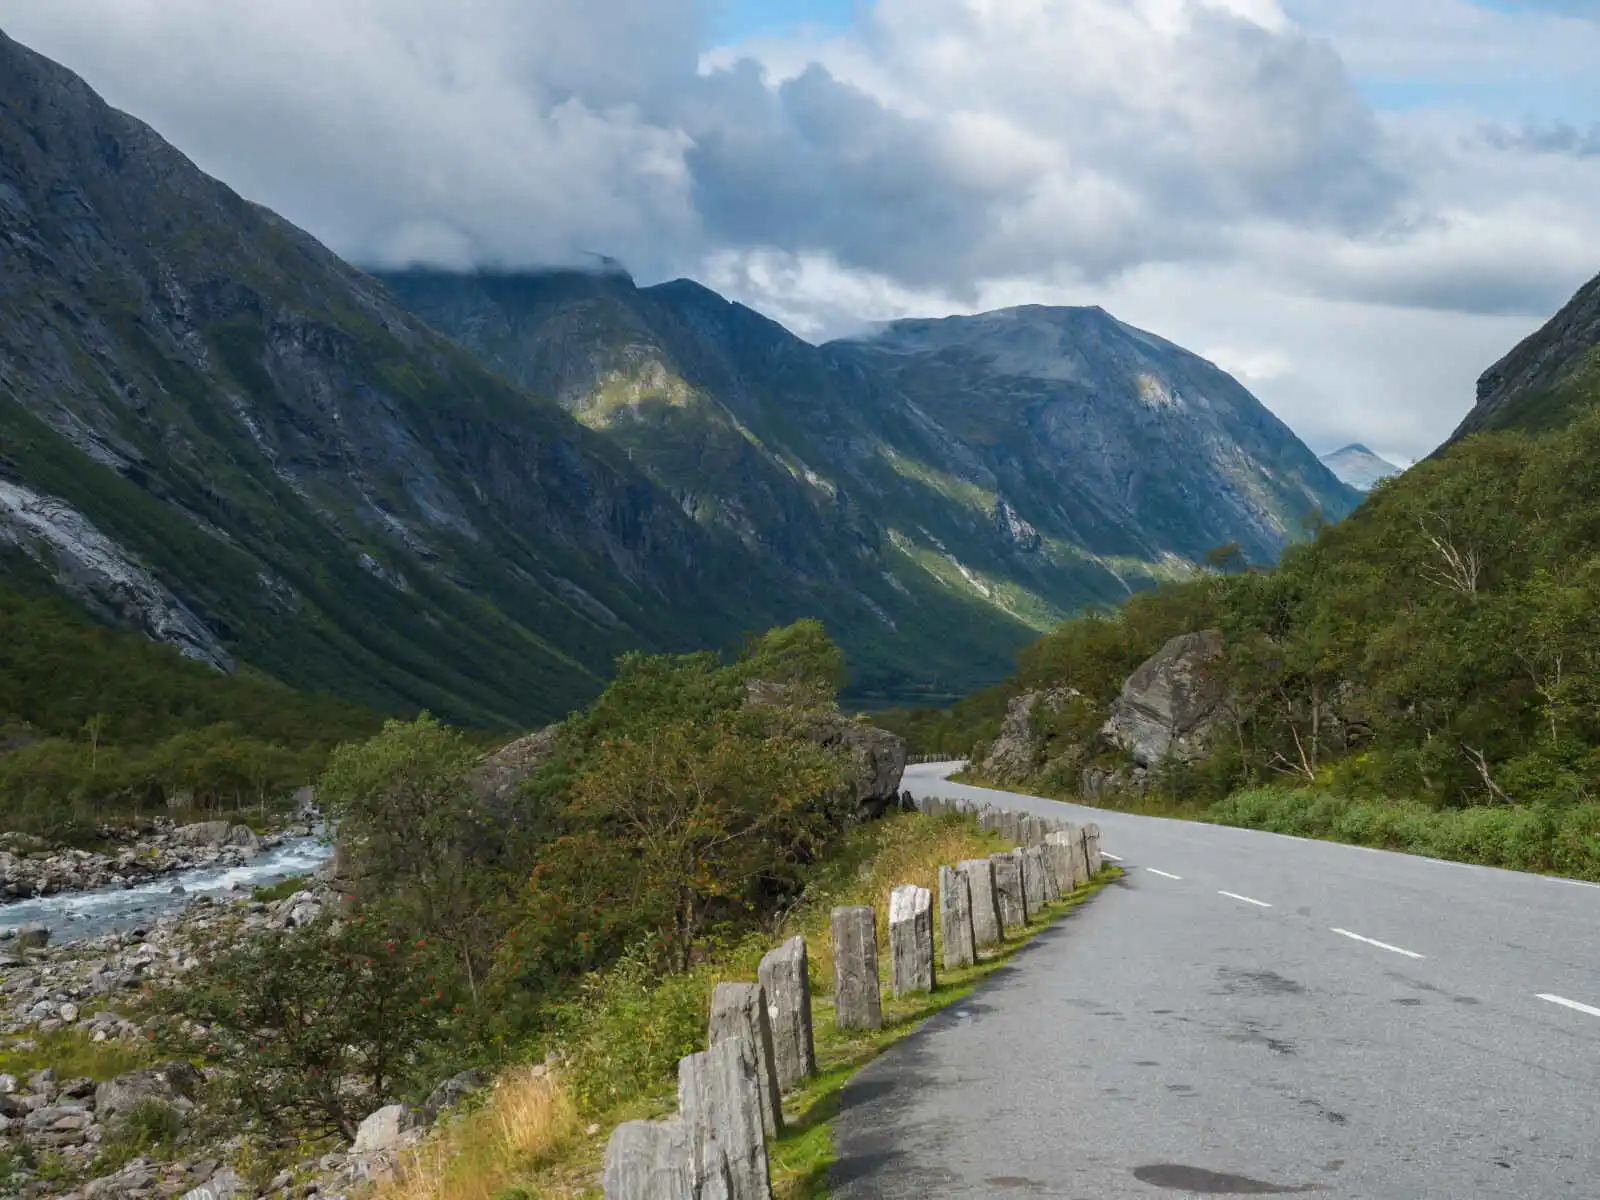 Route près du massif montagneux de Trolltindene, vallée de Romsdal, Norvège